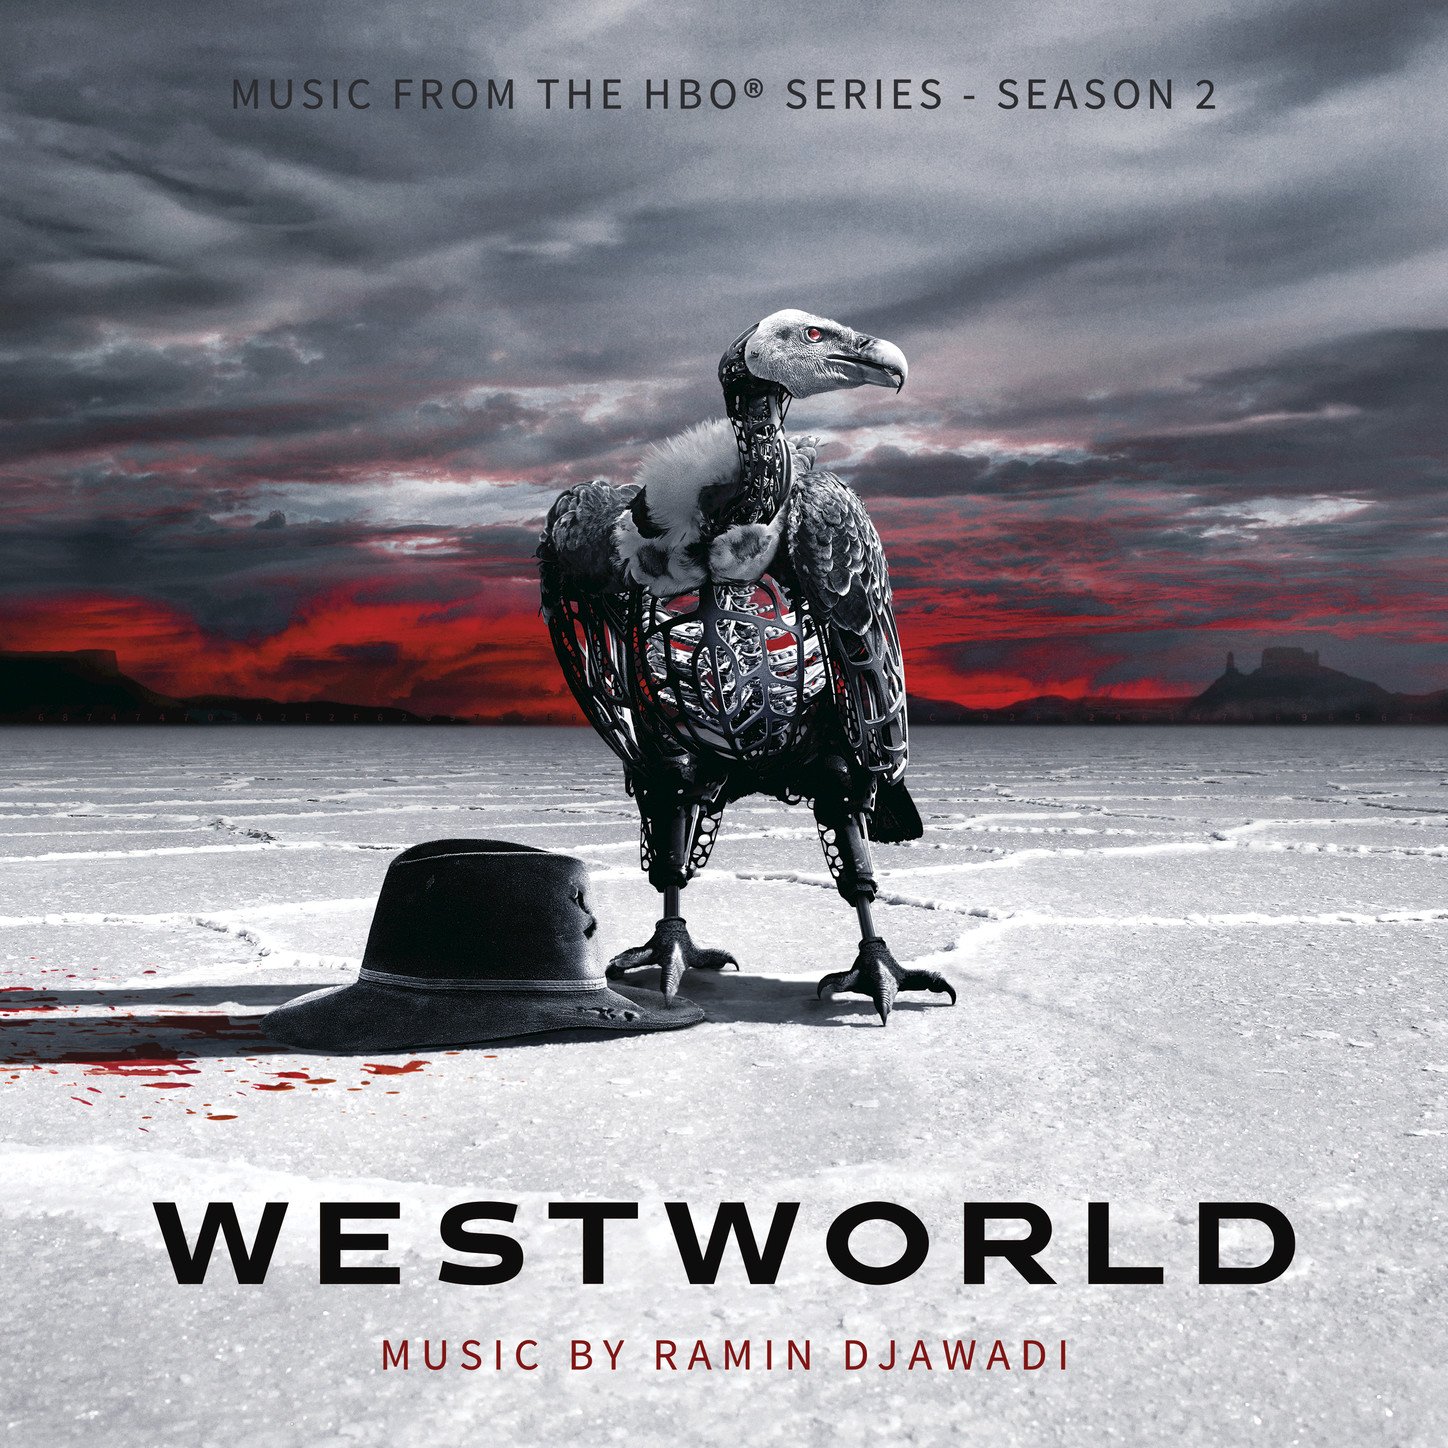 Vinile Ramin Djawadi - Westworld Season 2 NUOVO SIGILLATO, EDIZIONE DEL 12/11/2018 SUBITO DISPONIBILE